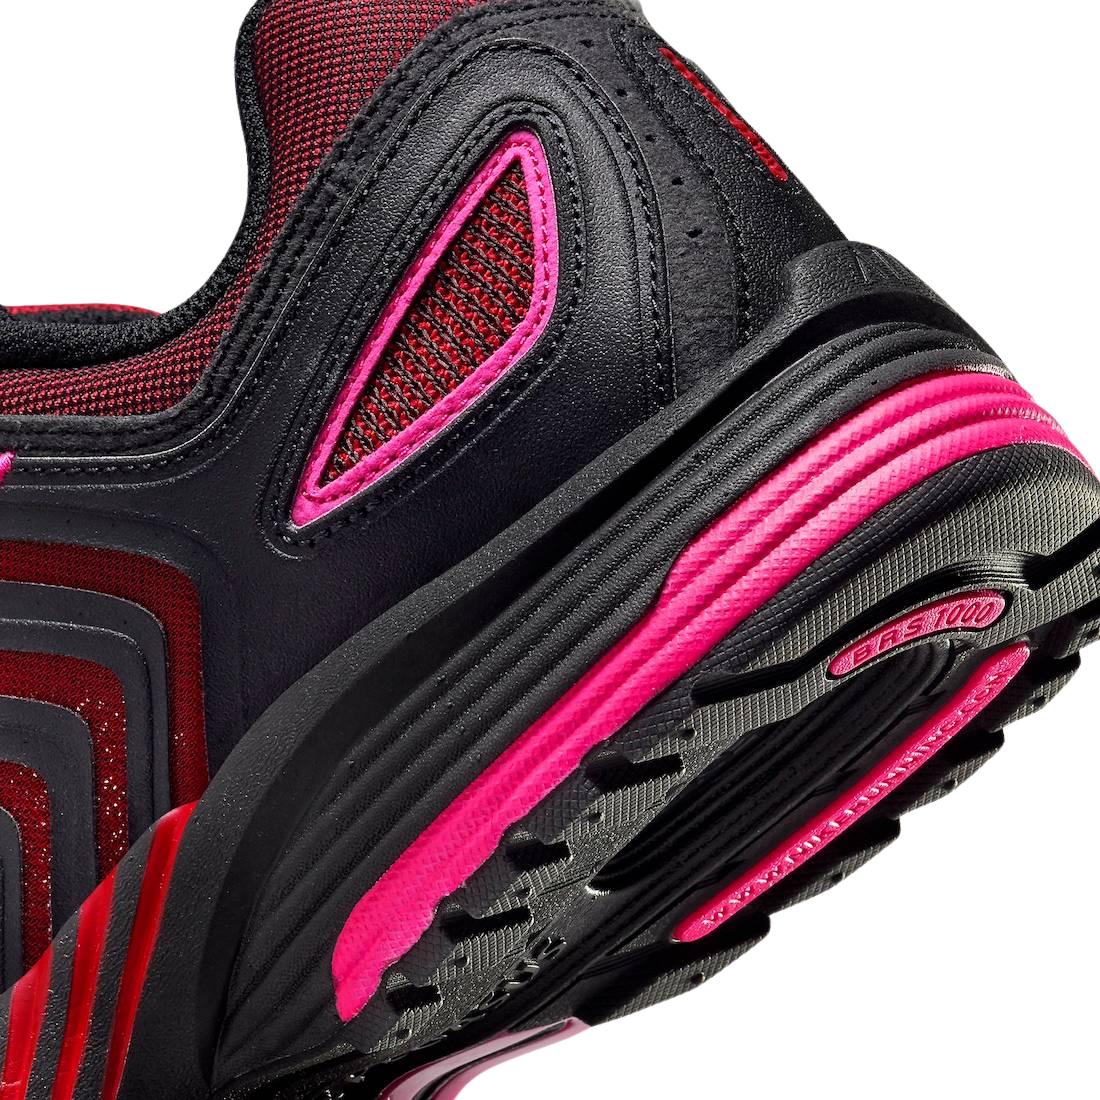 Nike Air Pegasus 2K5 Fierce Pink